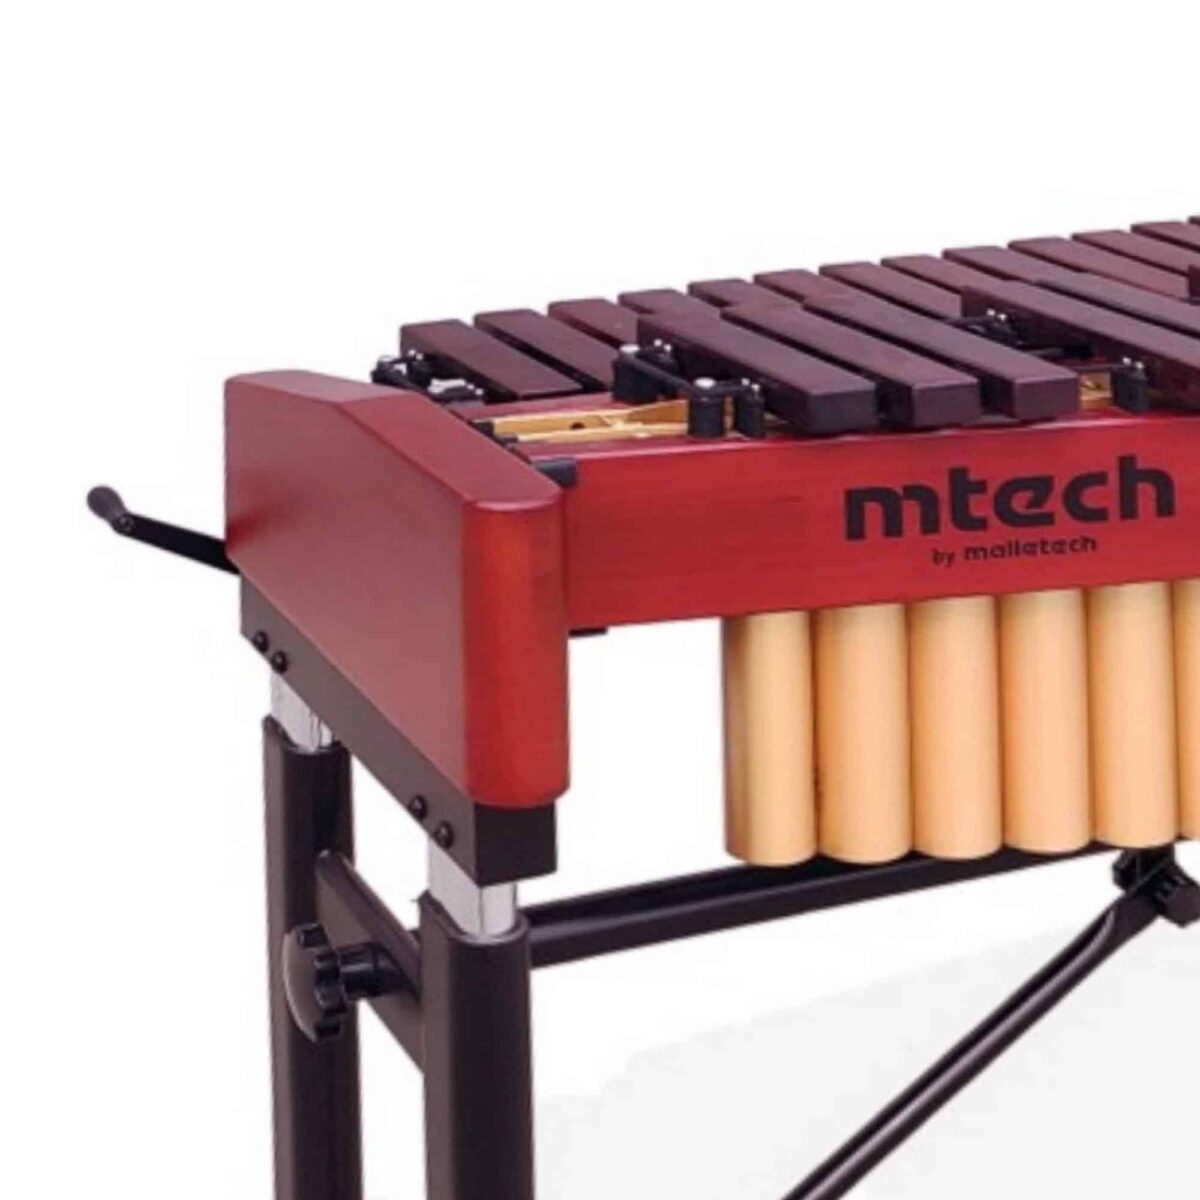 Malletech MMT5.0 M-Tech 5 octave Marimba